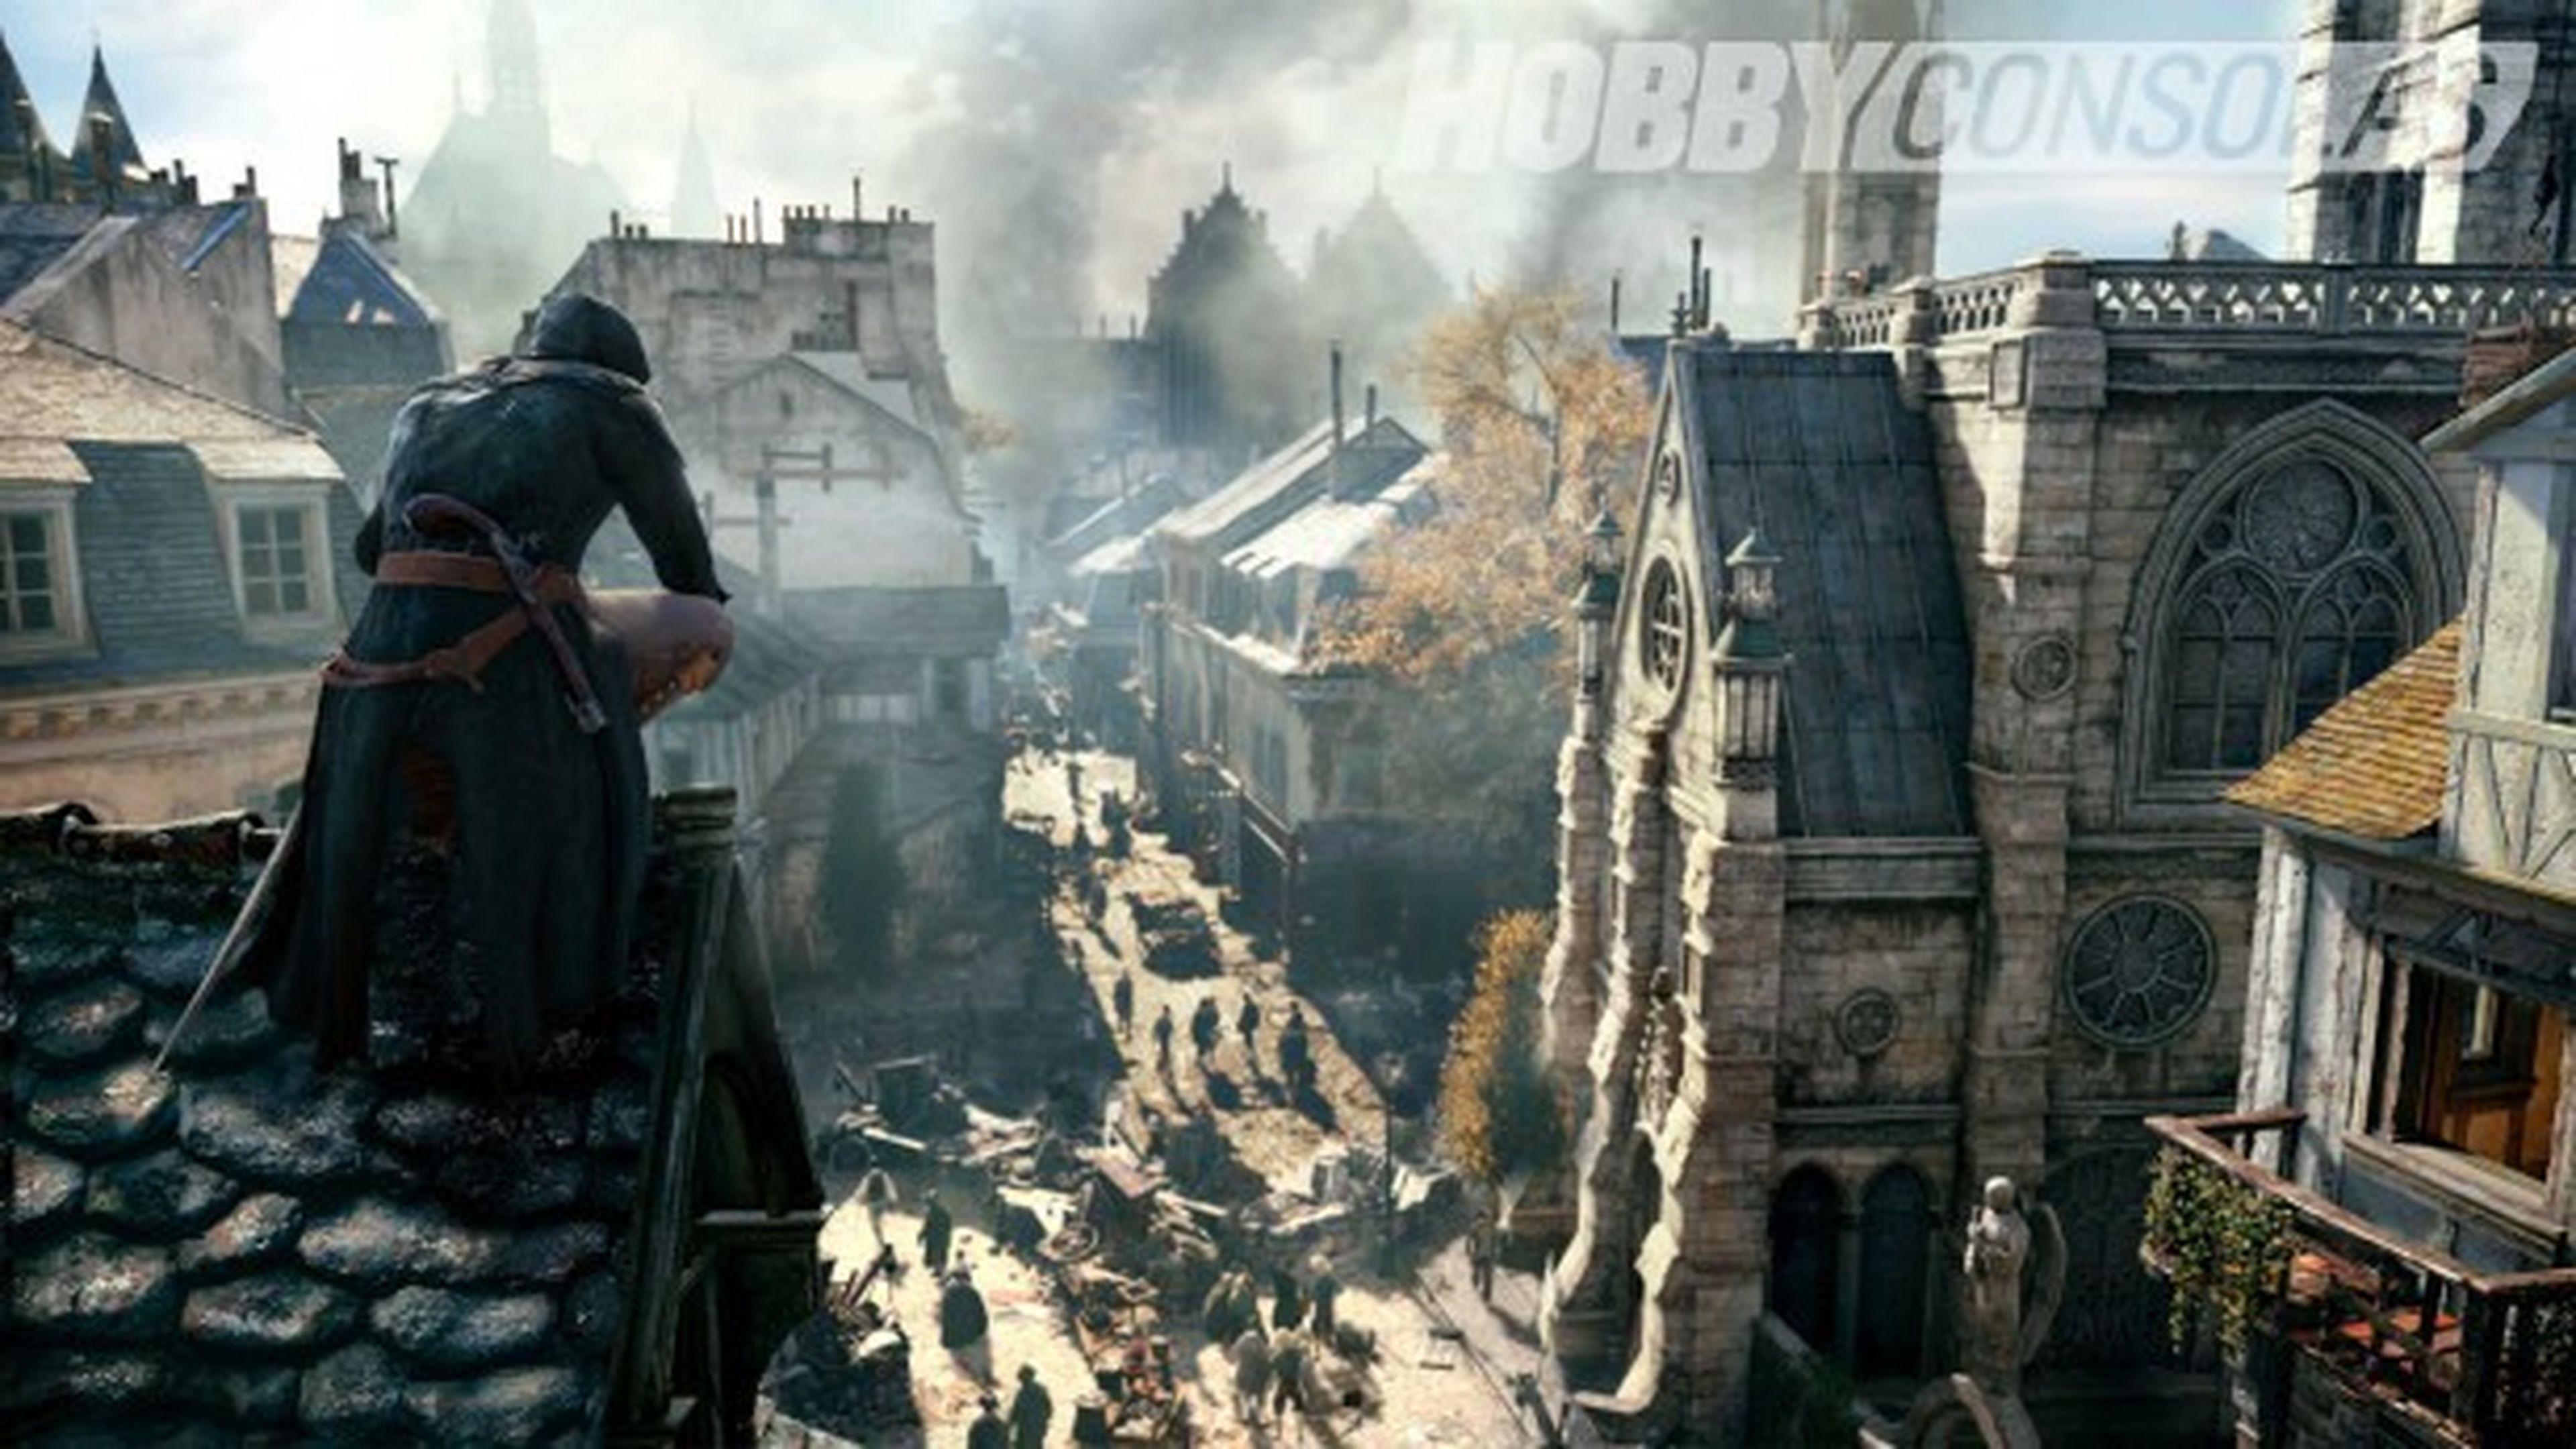 Assassin's Creed Unity supondrá "un nuevo comienzo narrativo en la serie"